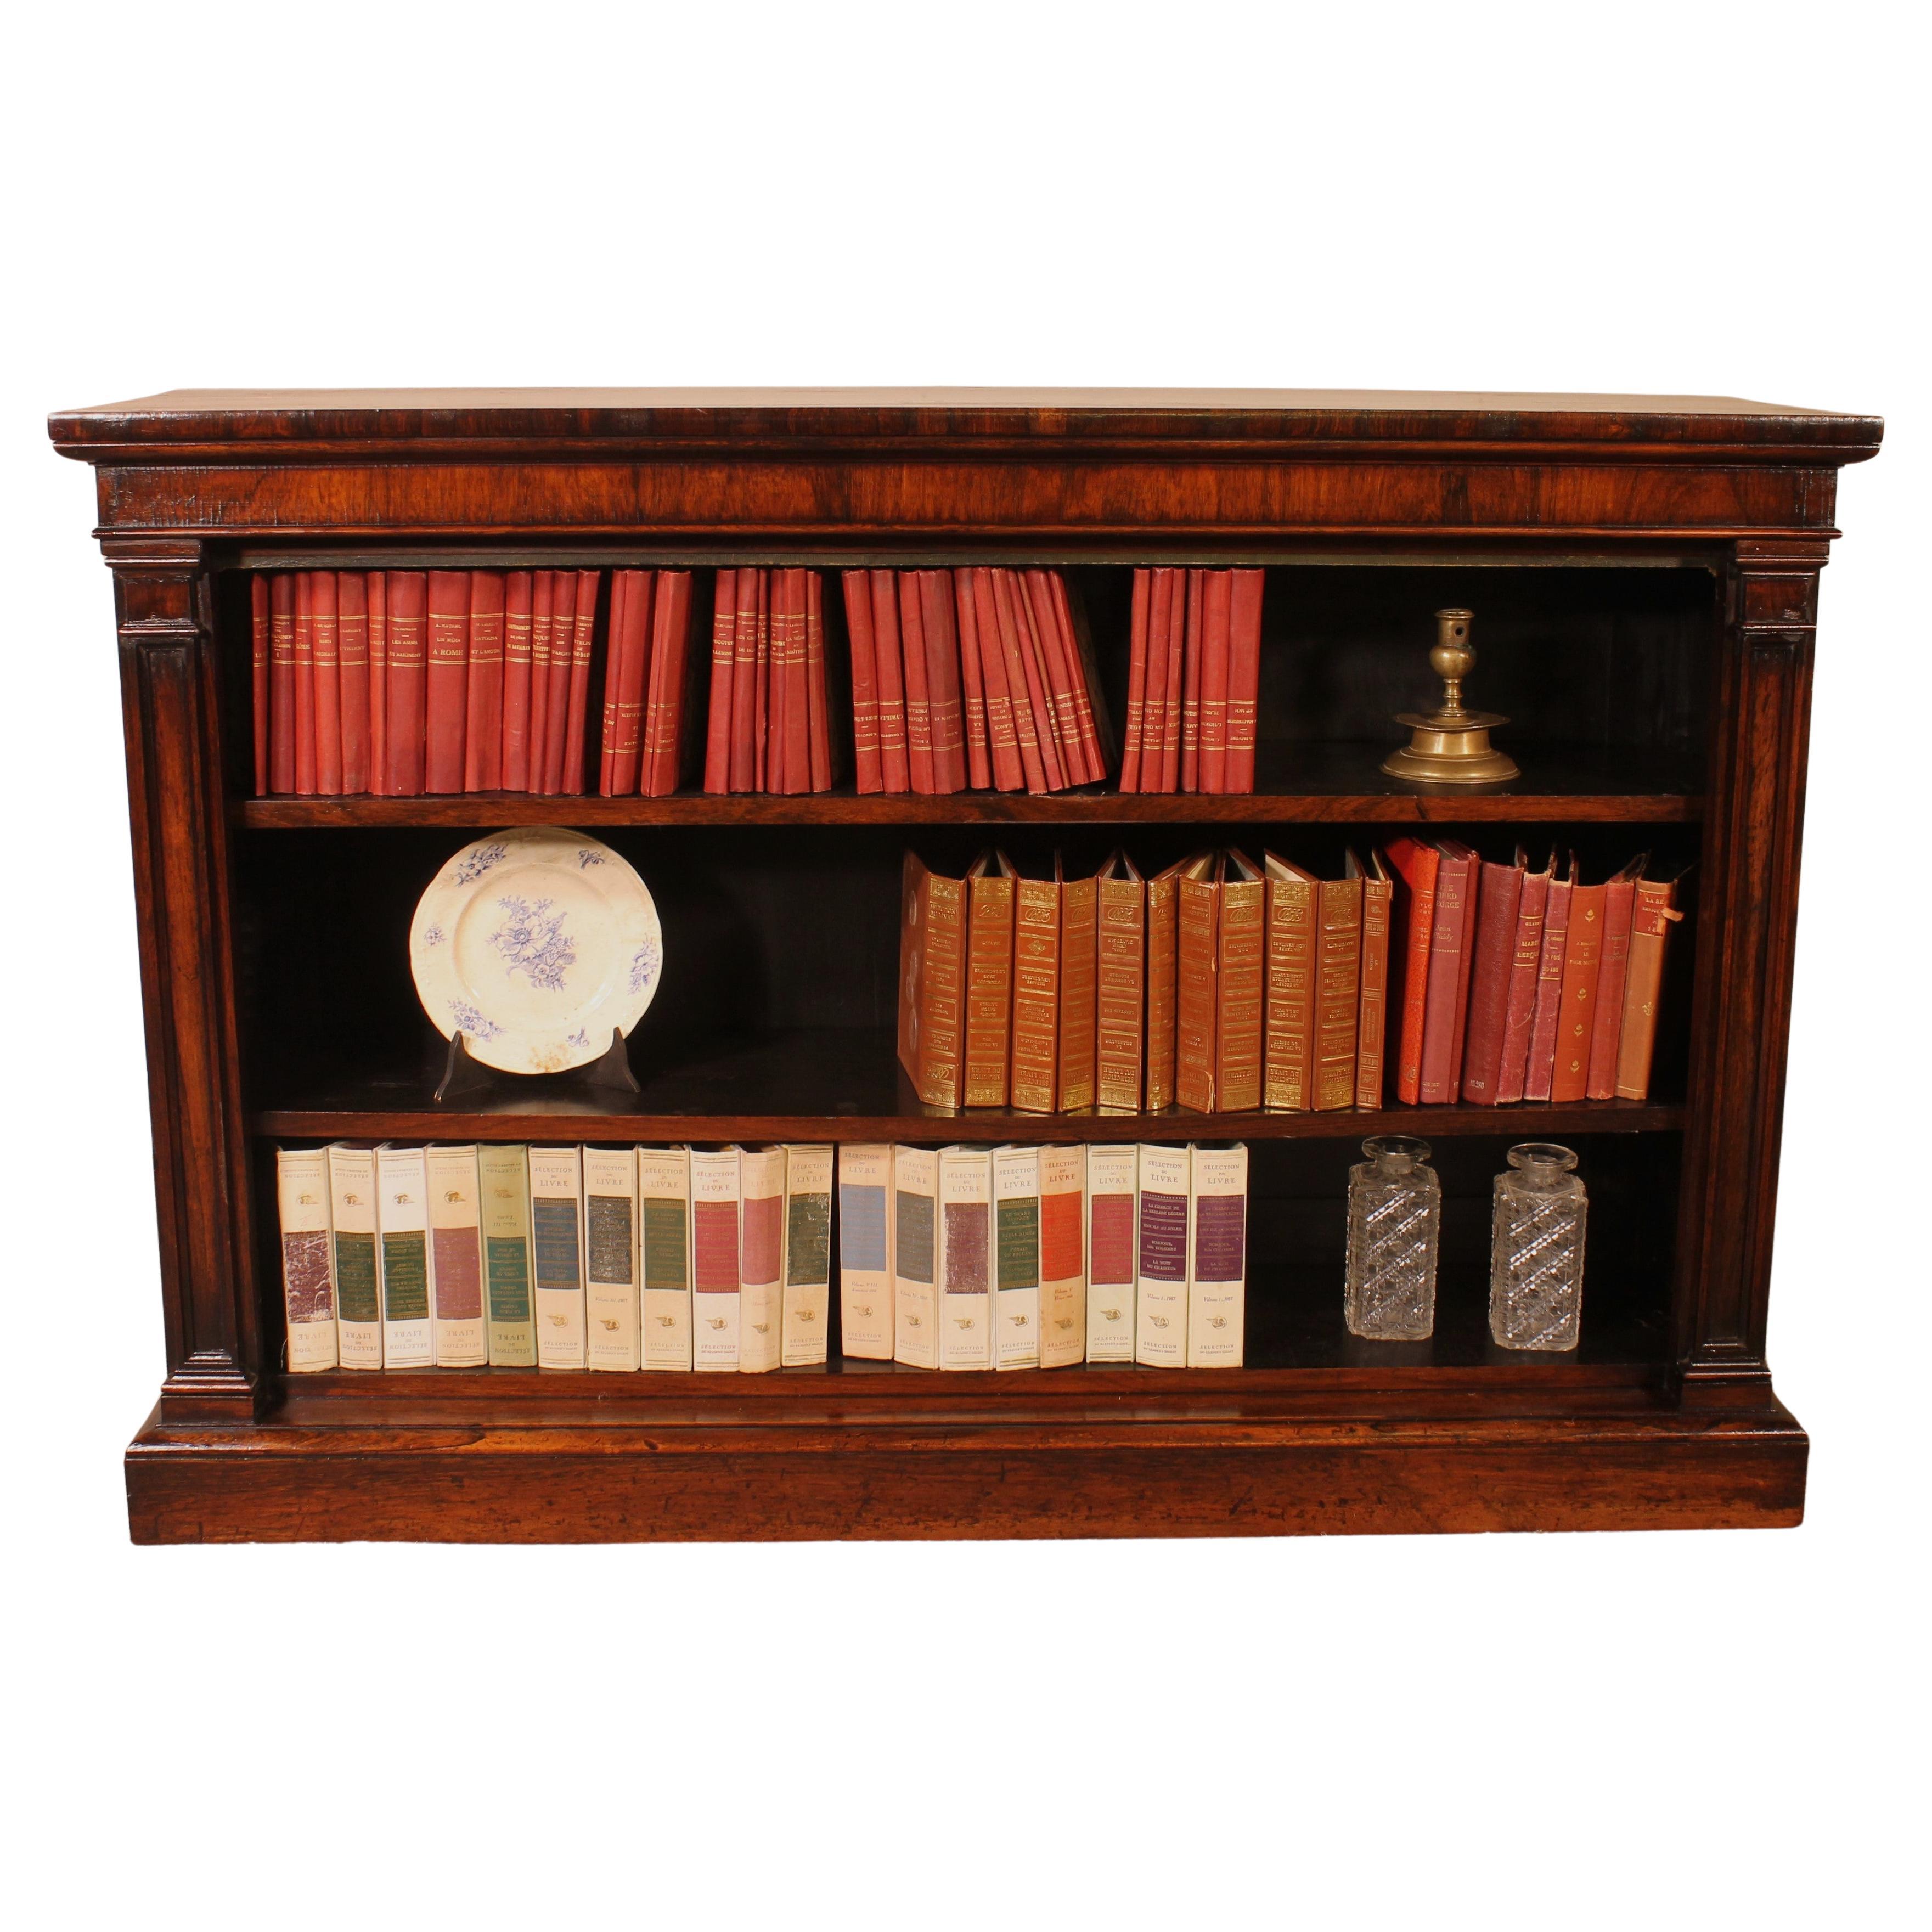 Offenes Bücherregal aus Palisander um 1800 aus der Regency-Zeit